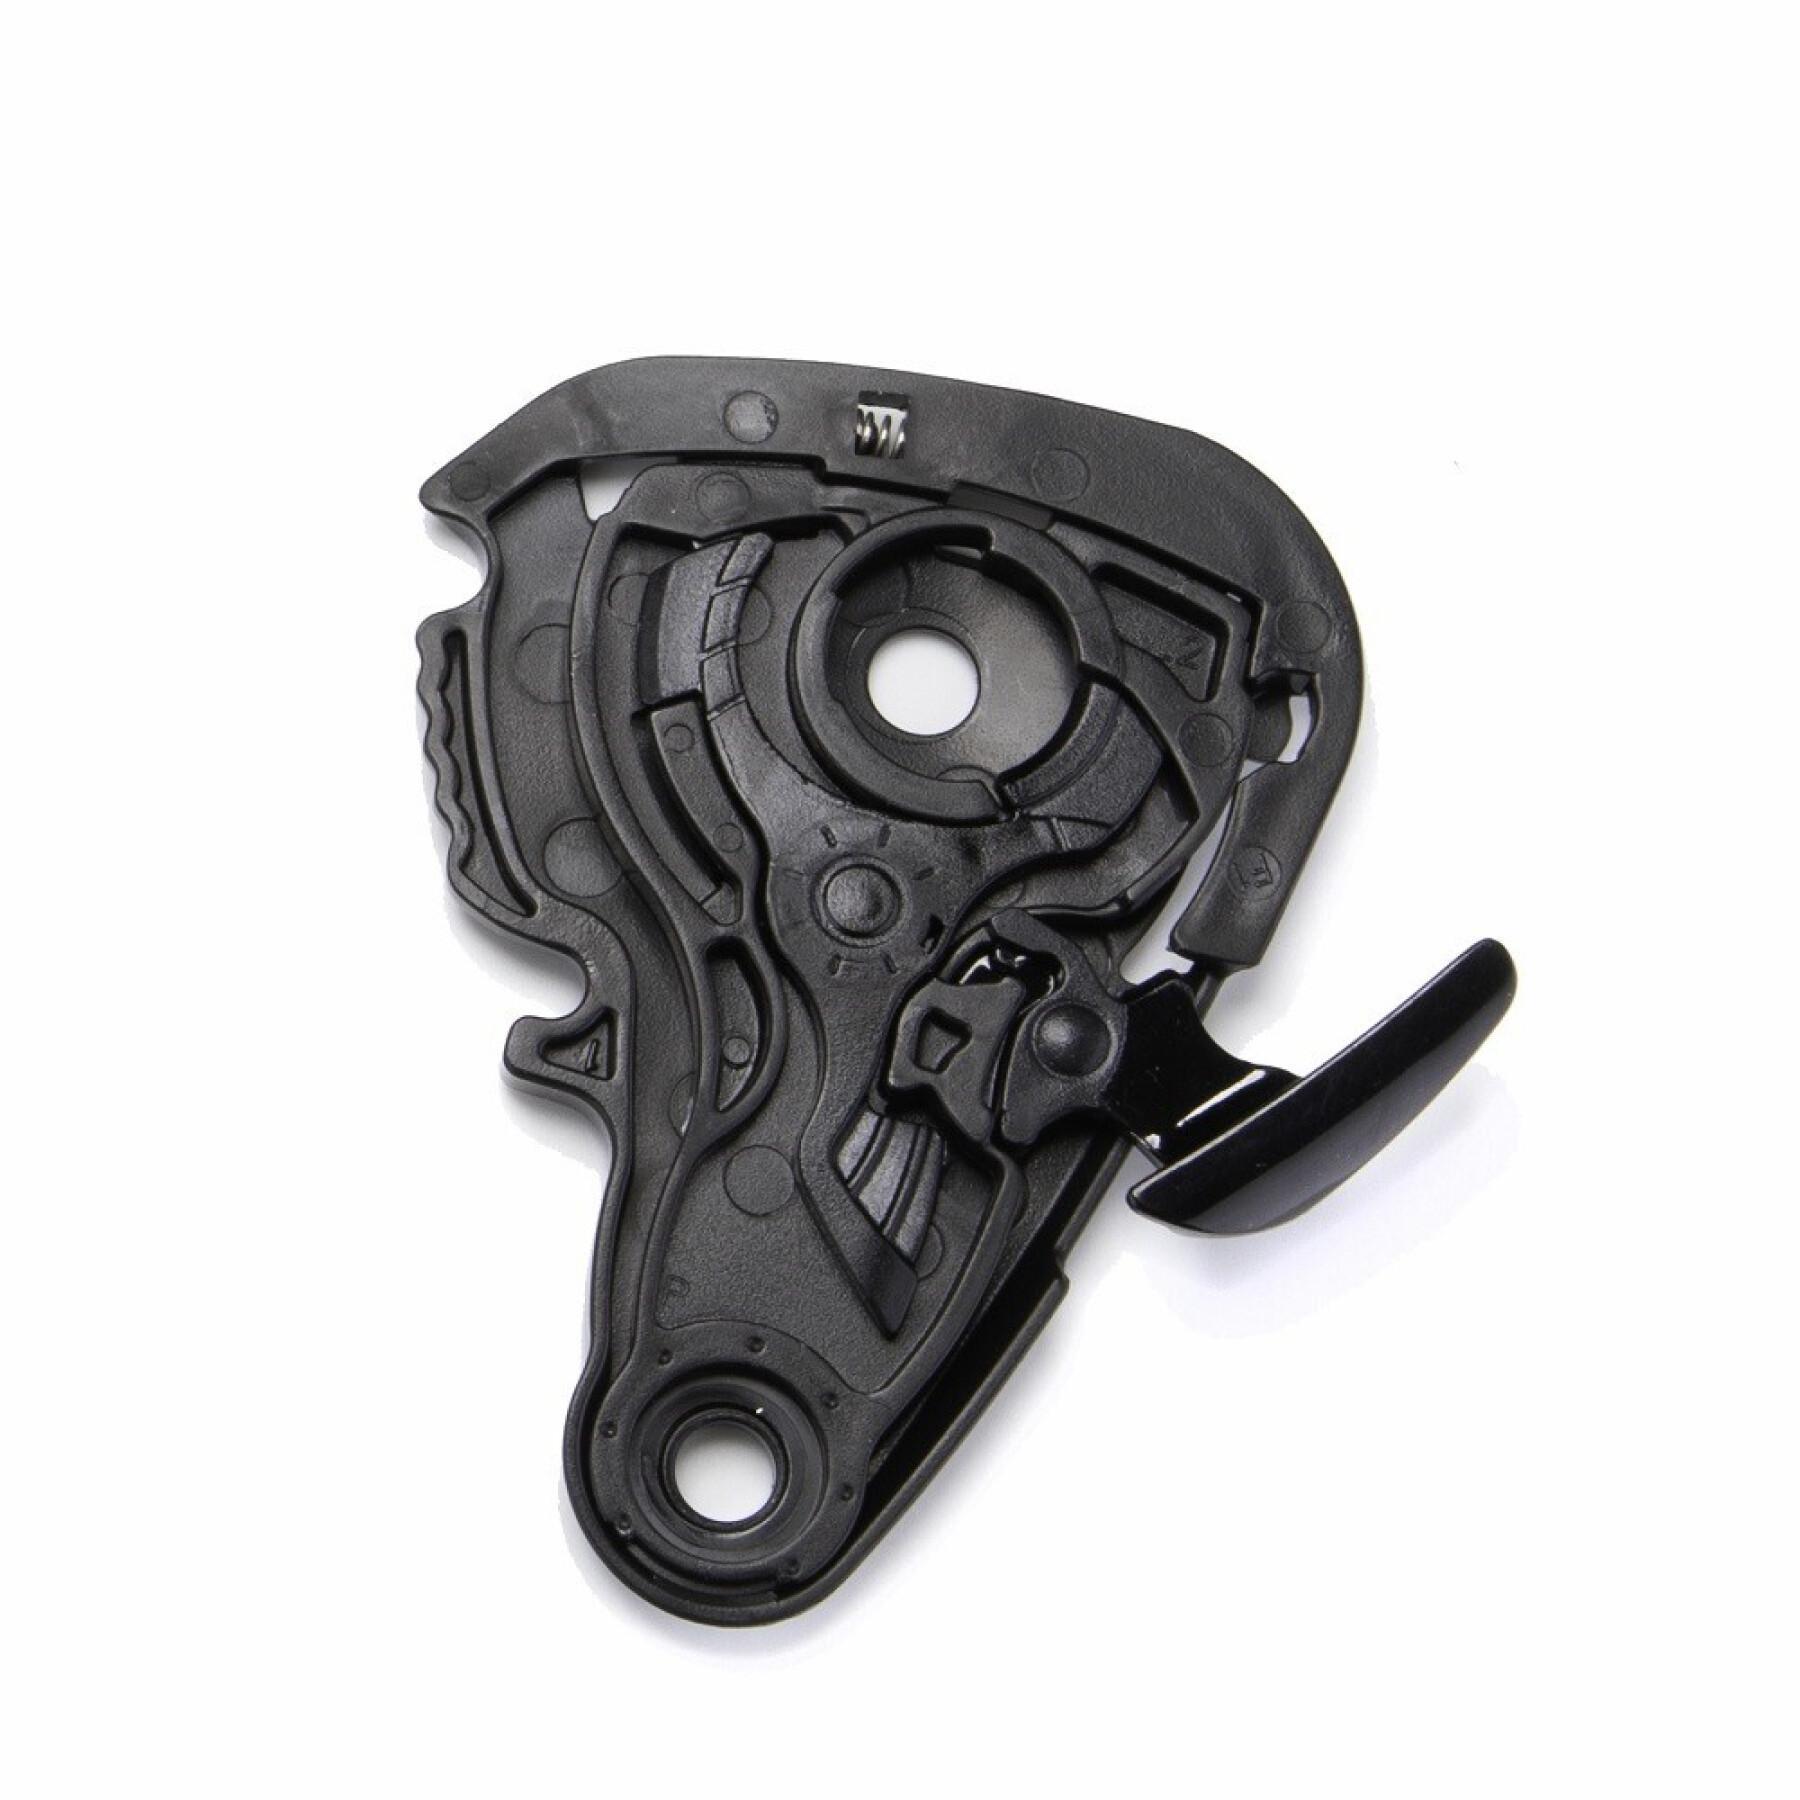 Kit zur Befestigung des Motorradvisiers Scorpion Exo-220 Shield